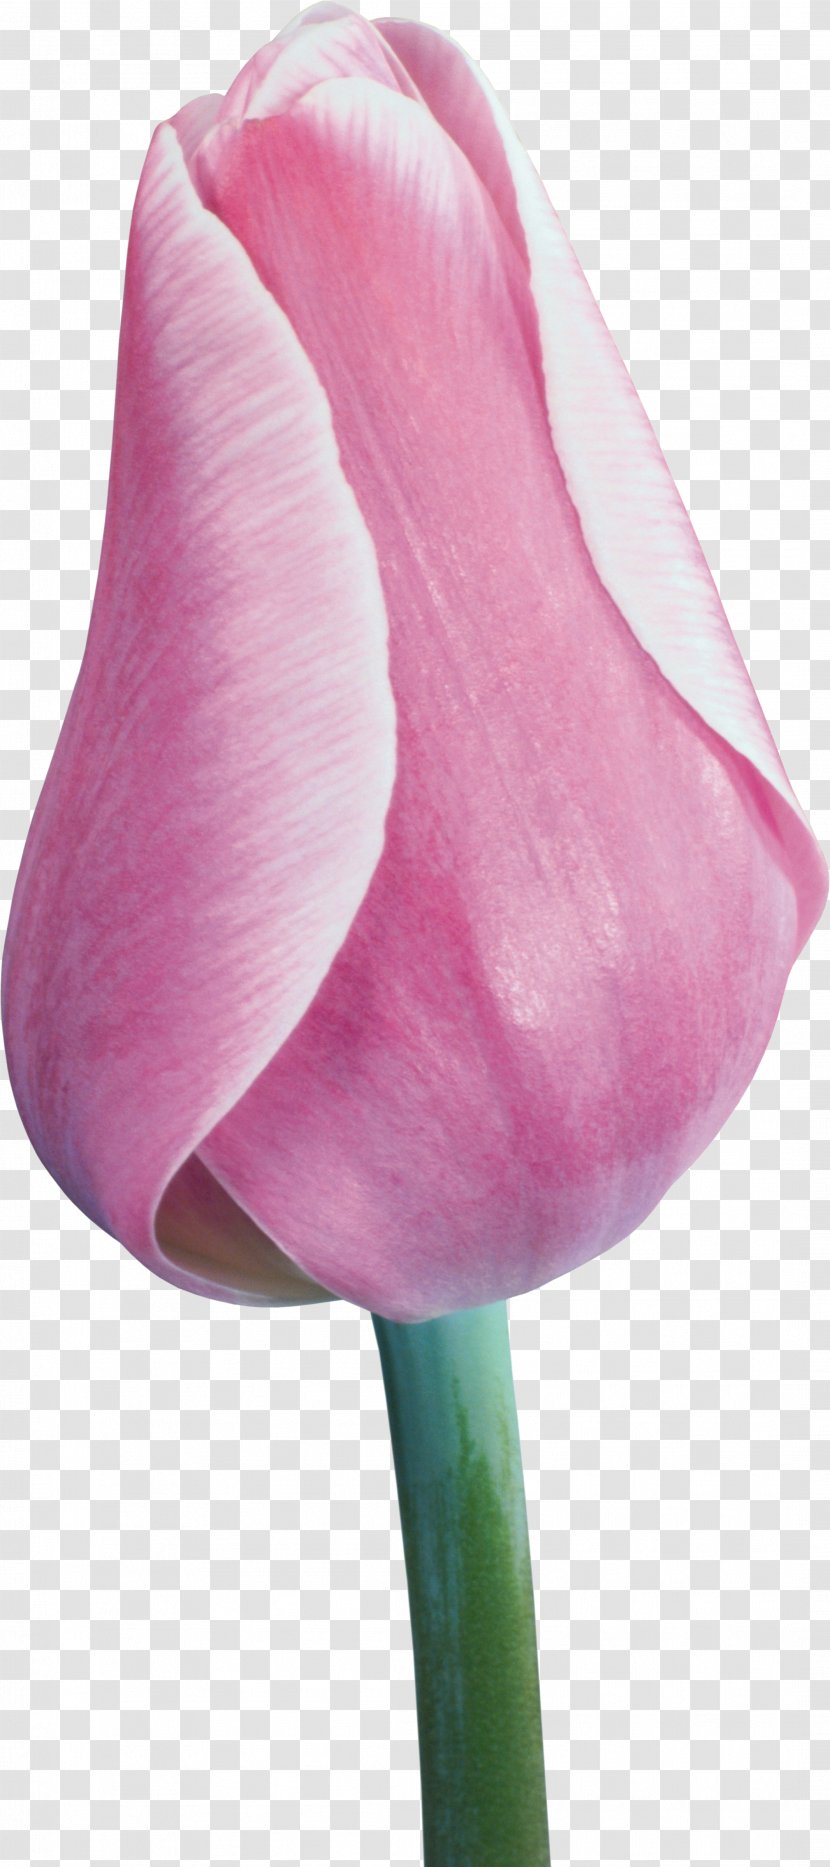 Tulip Flower Liliaceae Plant Stem Clip Art - Flowering Transparent PNG